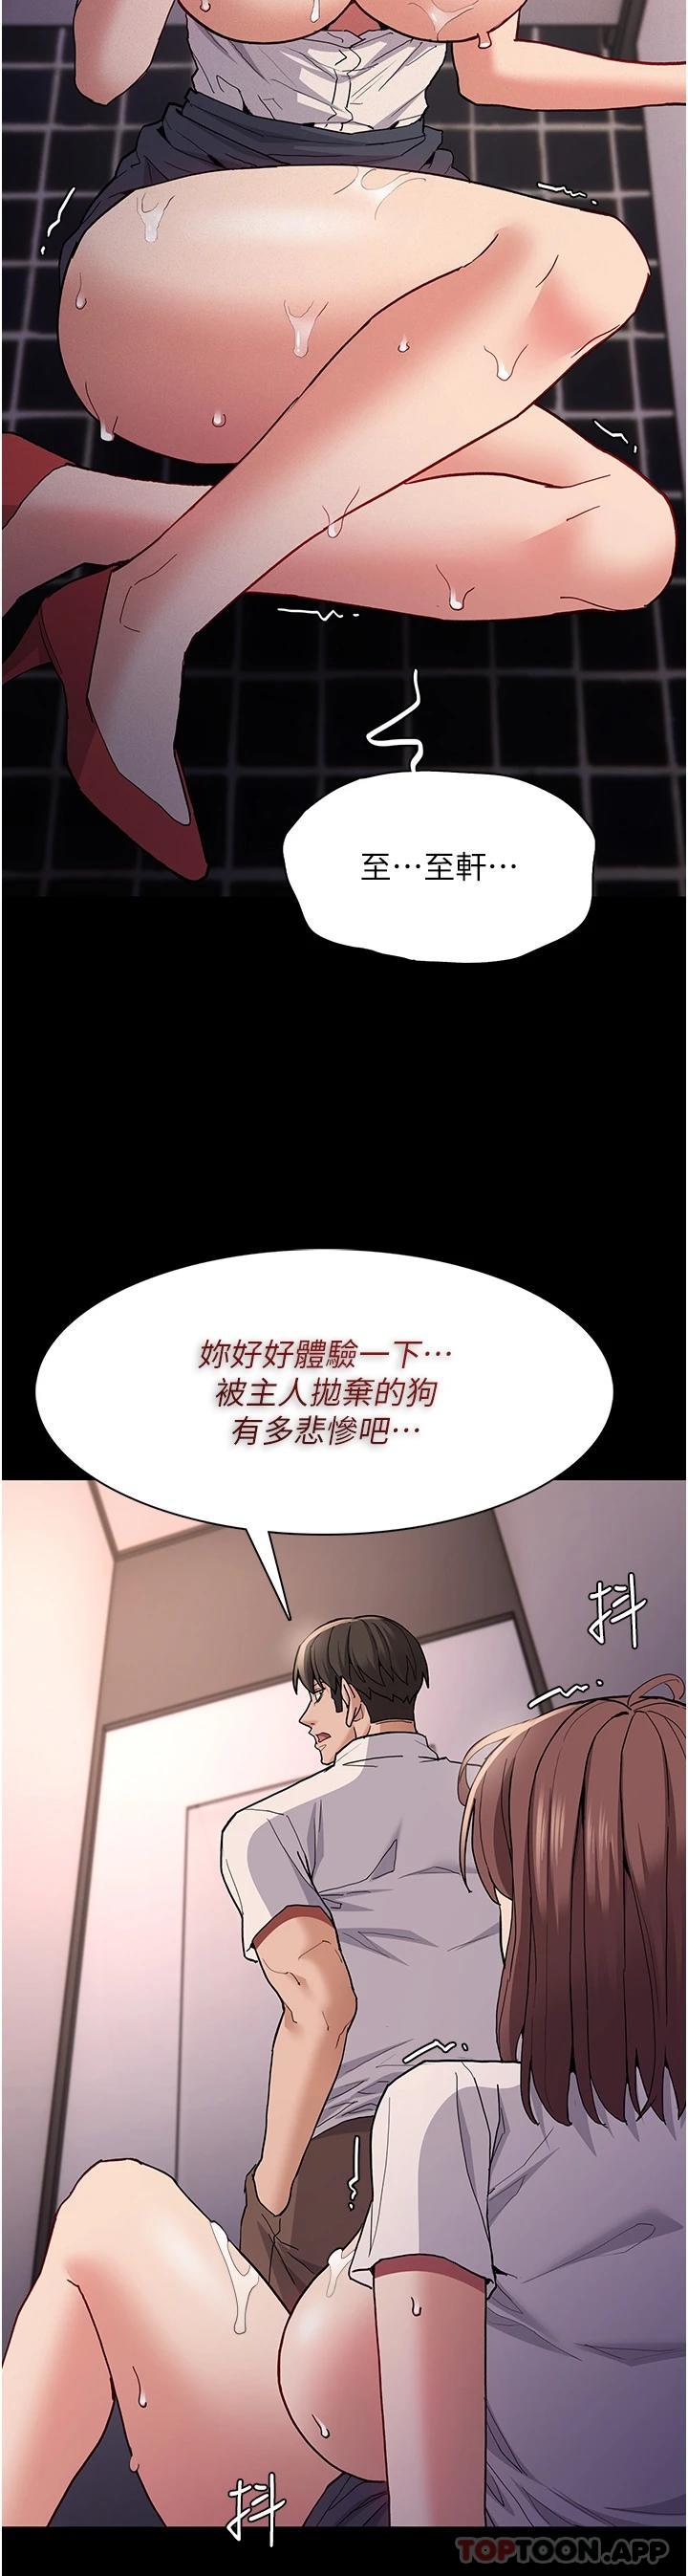 韩国污漫画 癡漢成癮 第26话-被主人抛弃的母狗 32